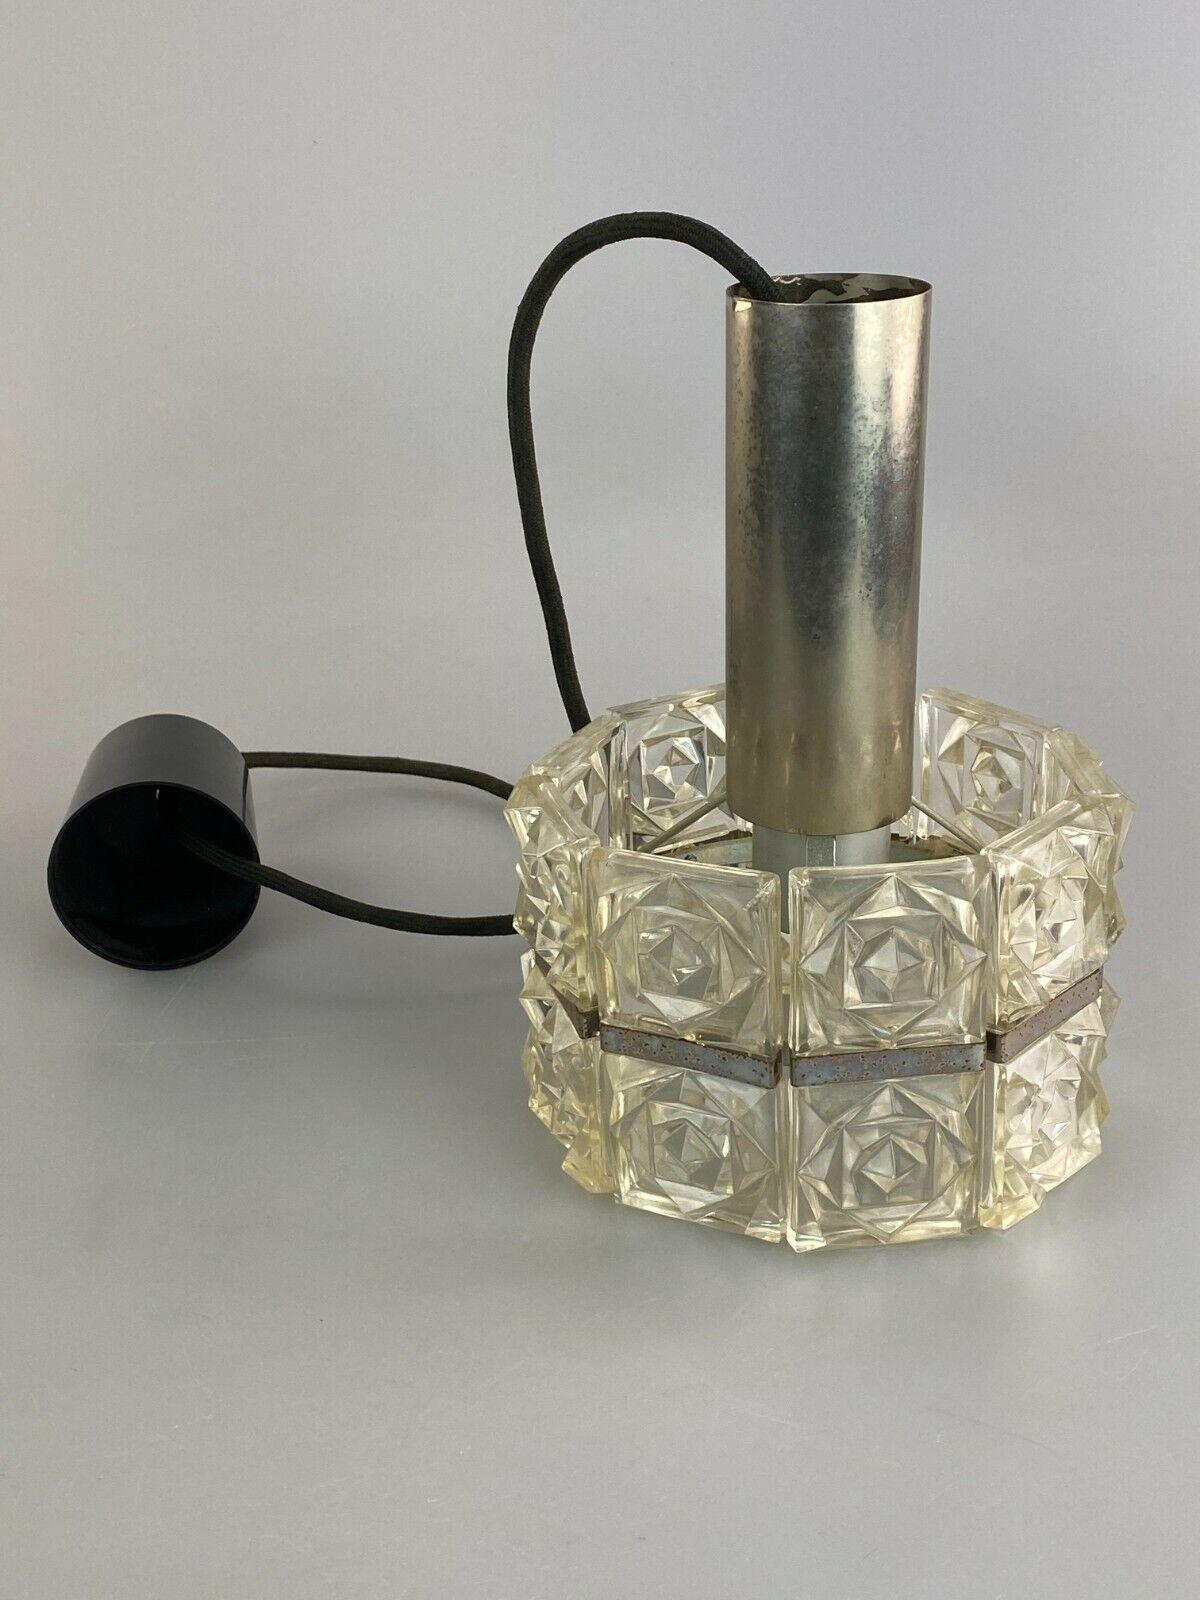 60s 70s Ceiling Lamp Glass Lamp Light Sölken Leuchten Space Age 60s 70s For Sale 3